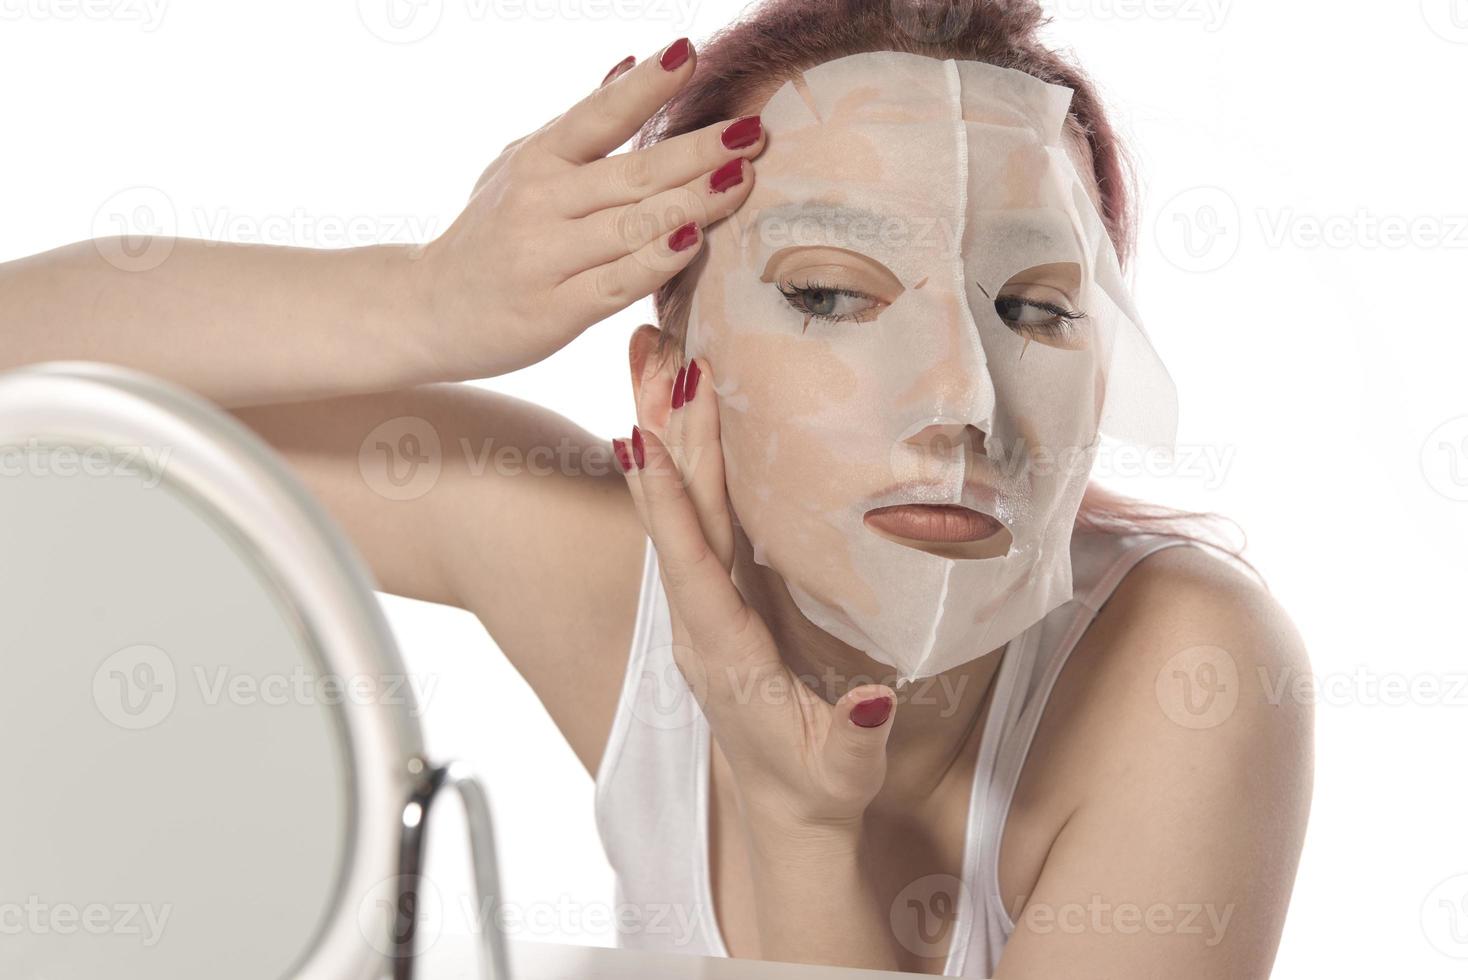 kunstmatig procedure. vrouw gezicht met wit kunstmatig masker foto